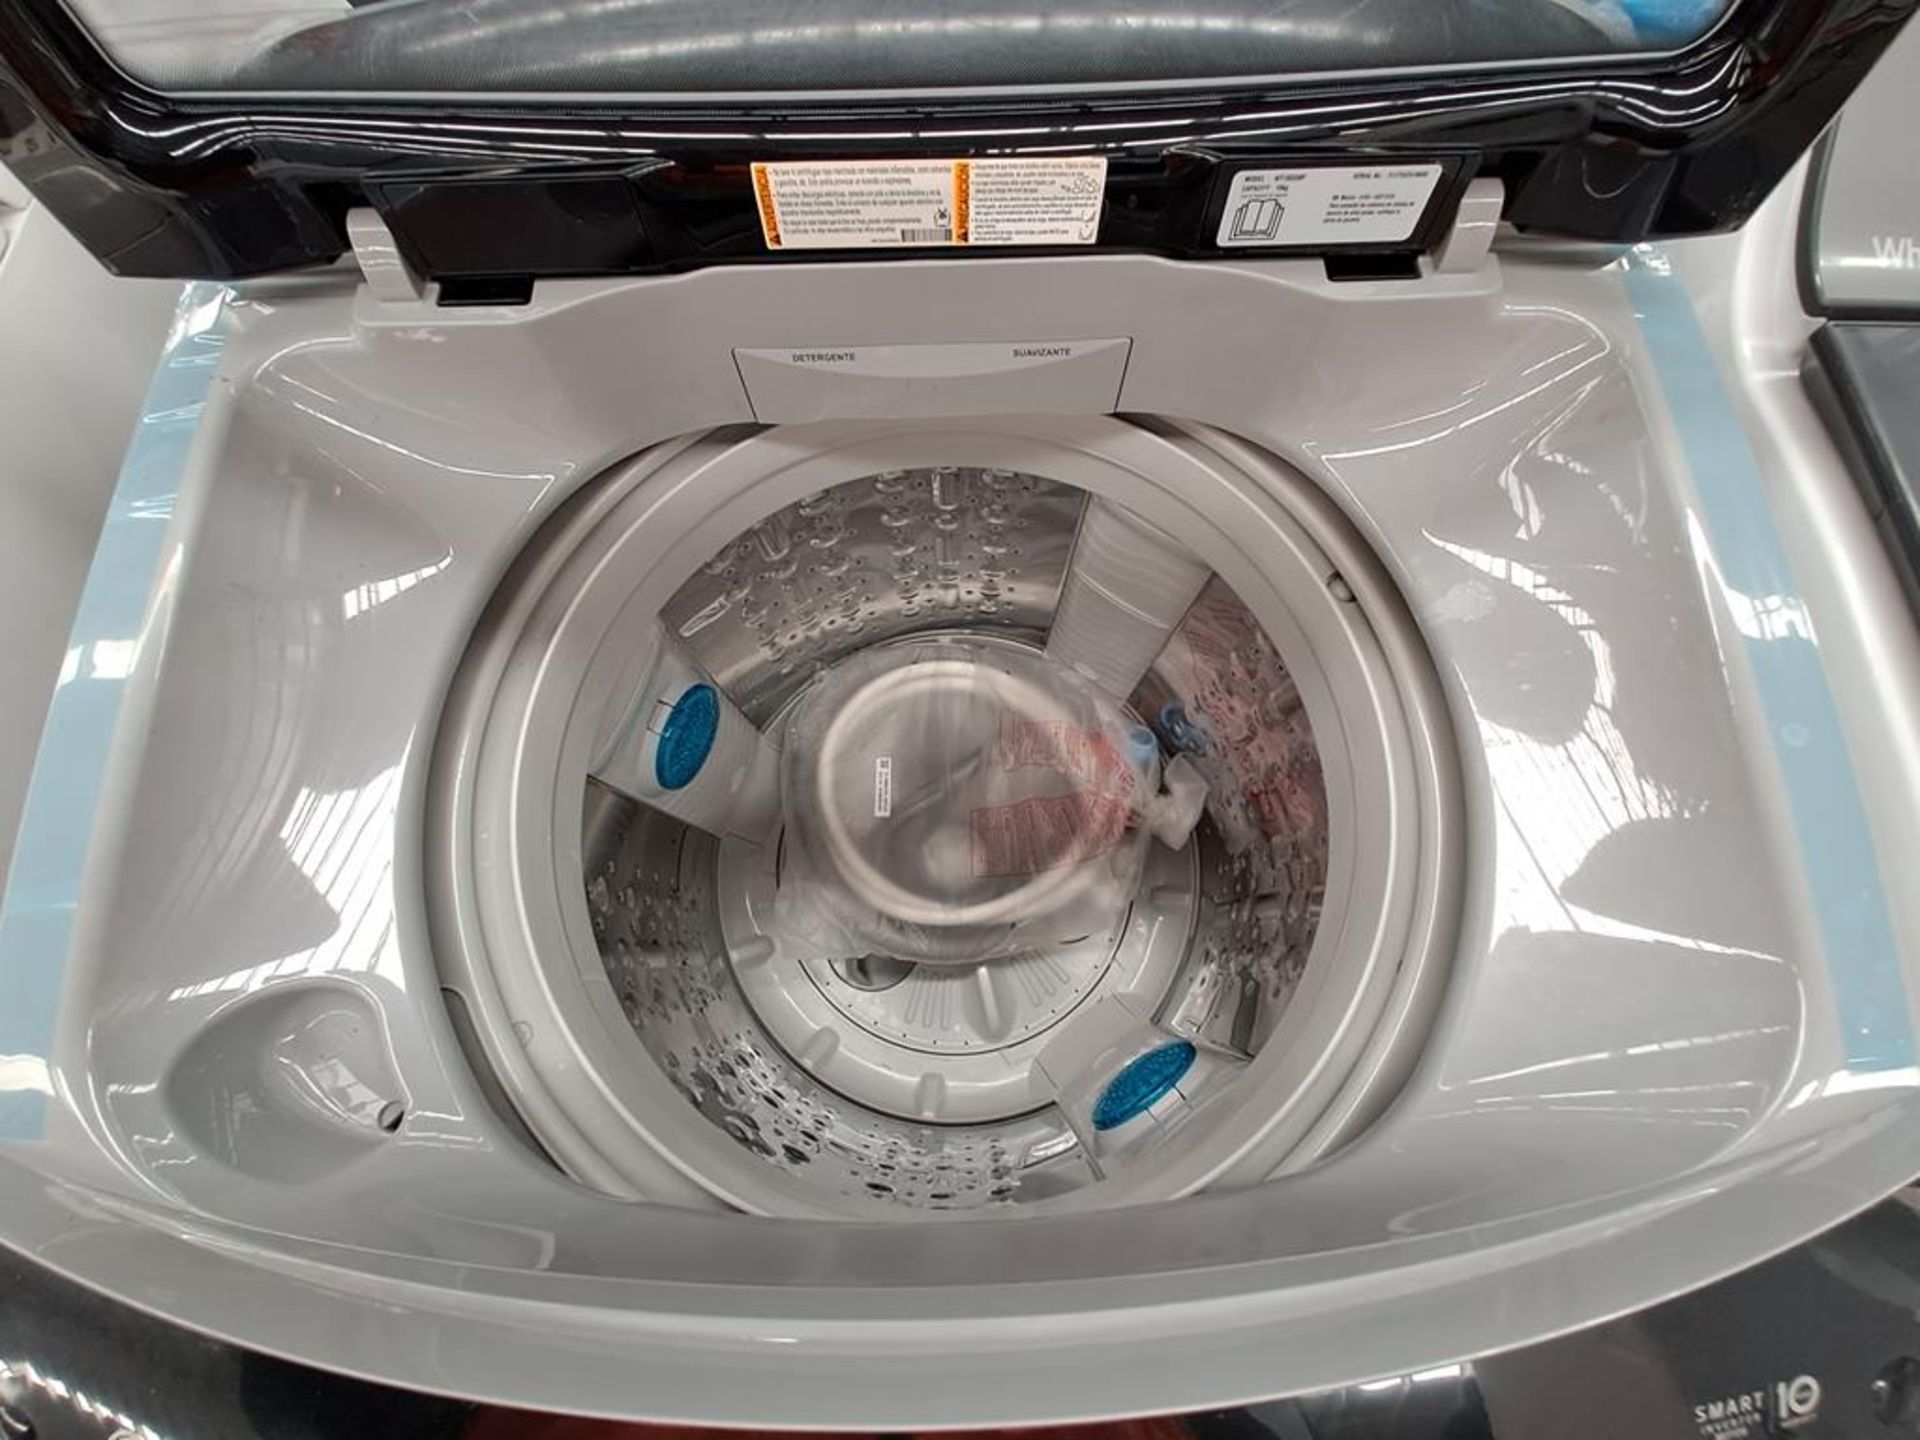 Lote de 2 lavadoras contiene: 1 Lavadora de 18 KG Marca LG, Modelo WT18DS8P, Serie ND, Color GRIS; - Image 6 of 8